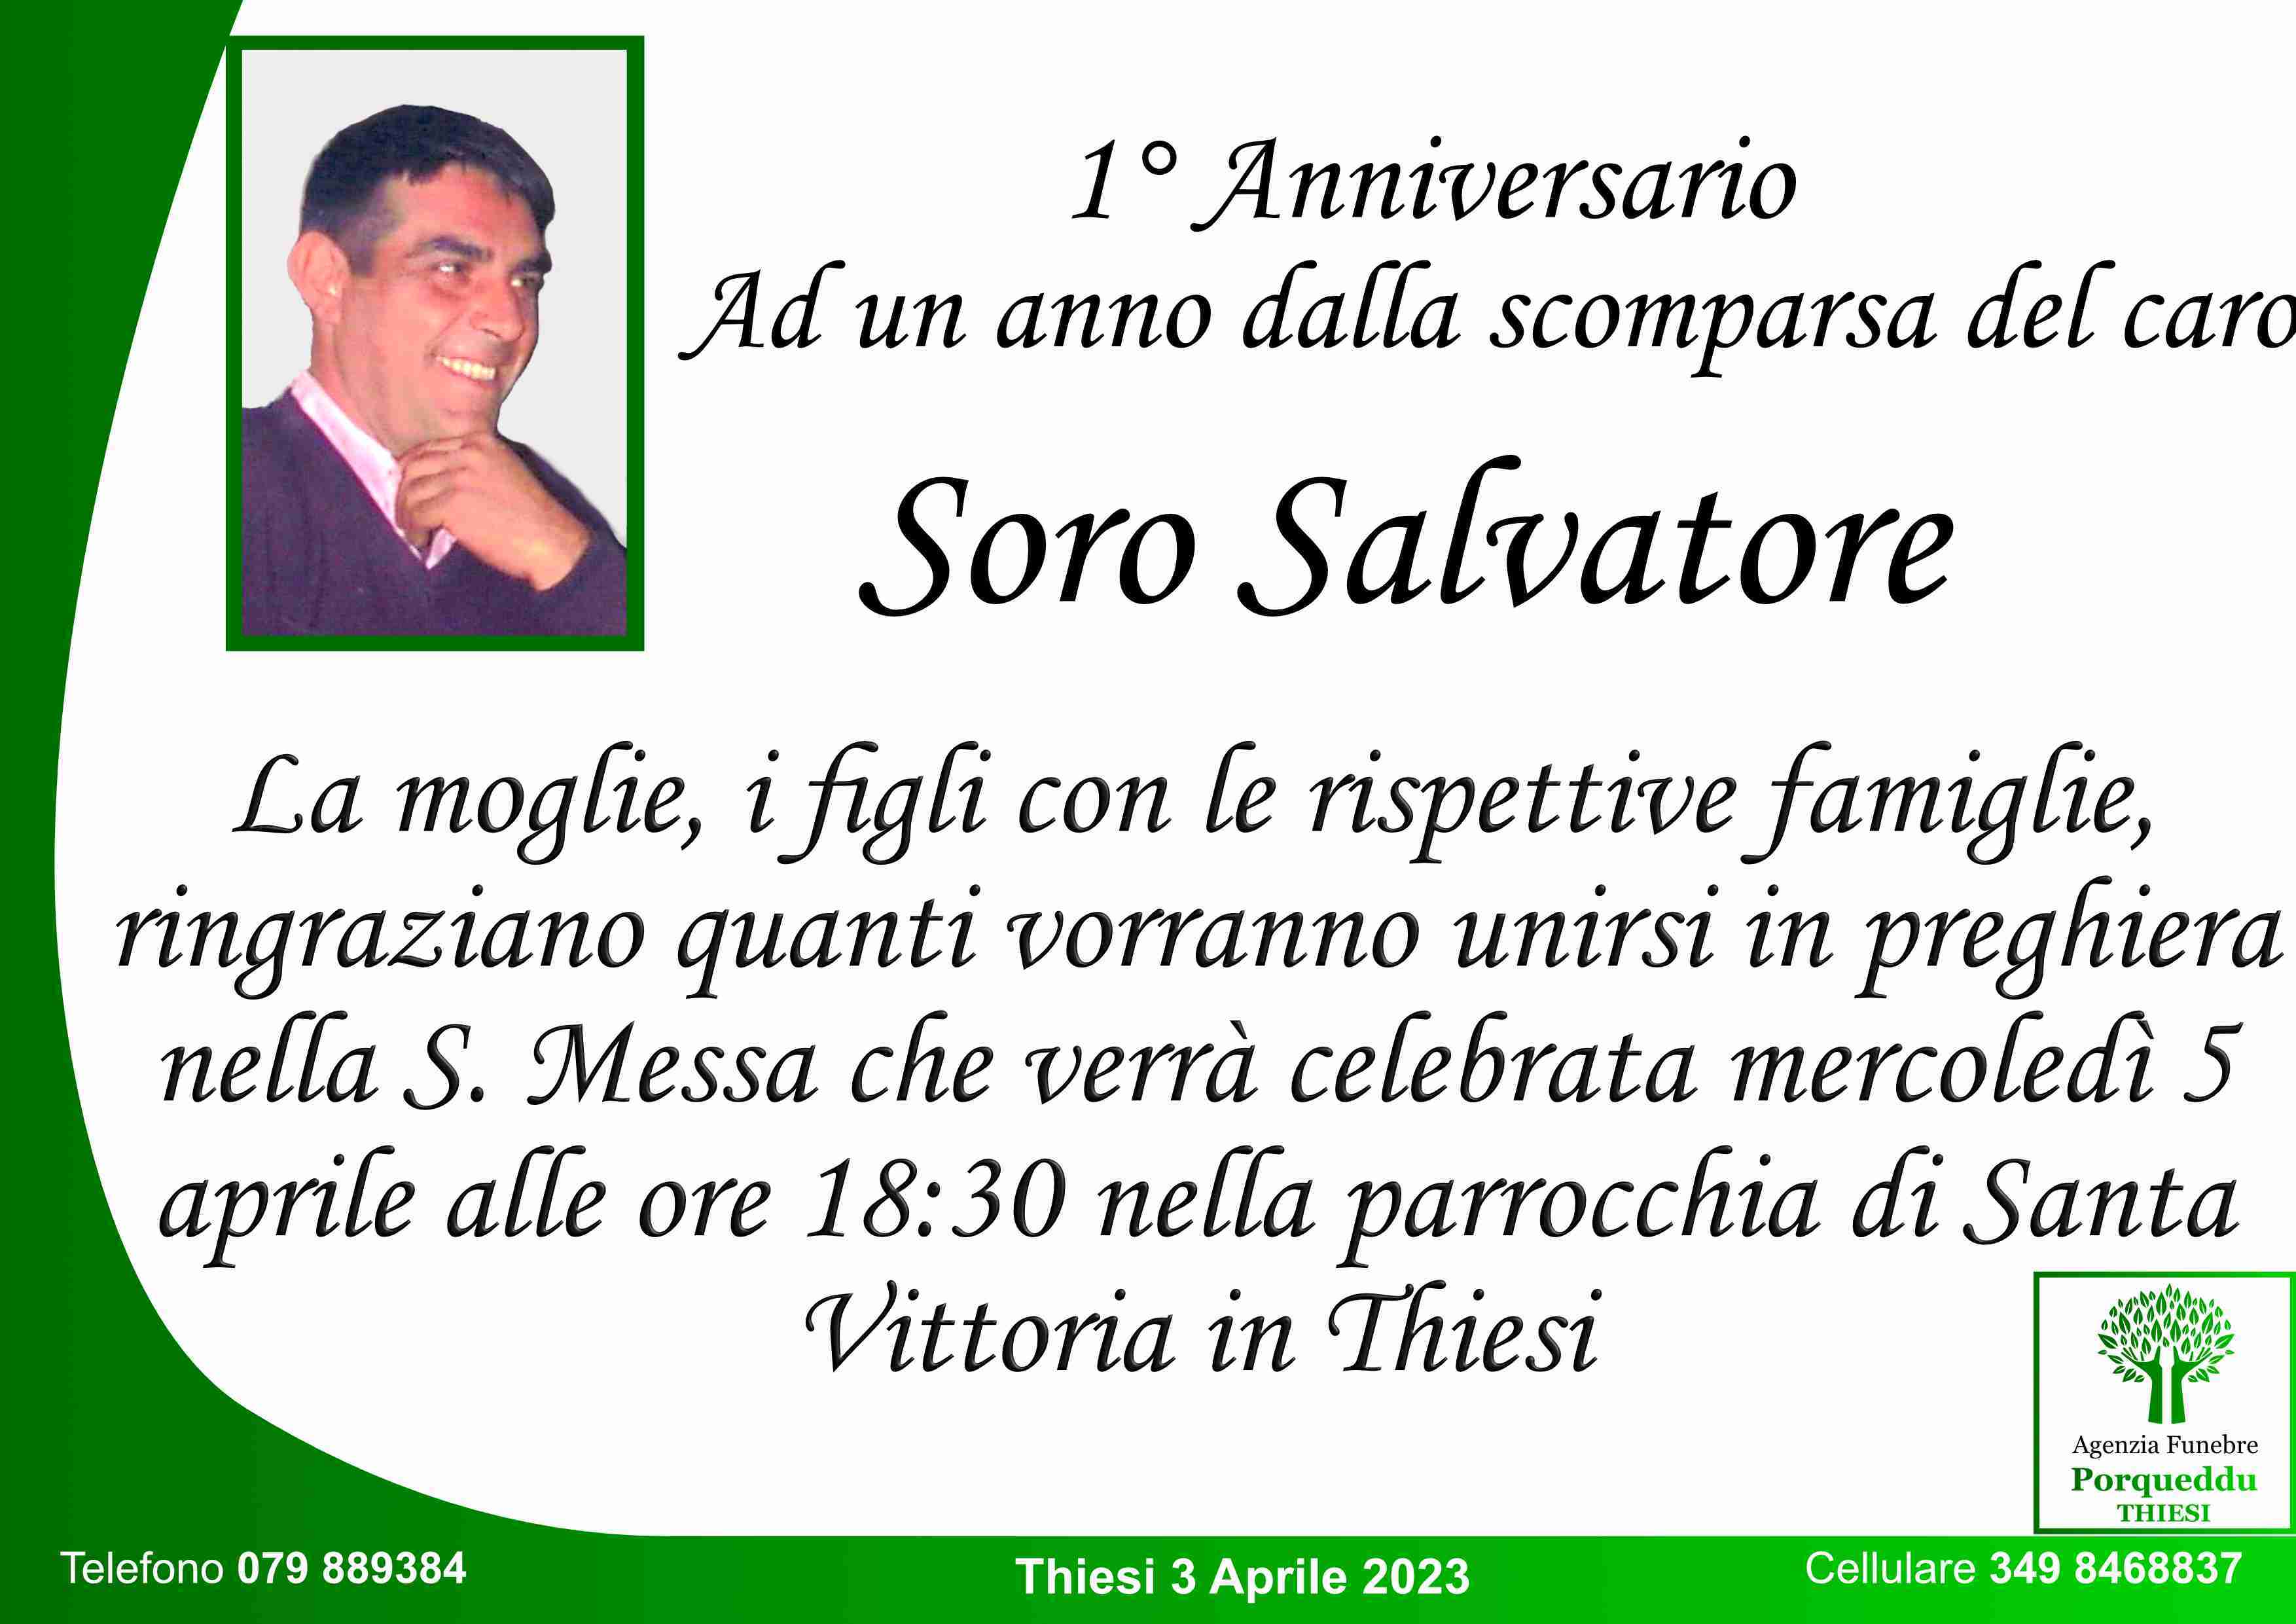 Salvatore Soro